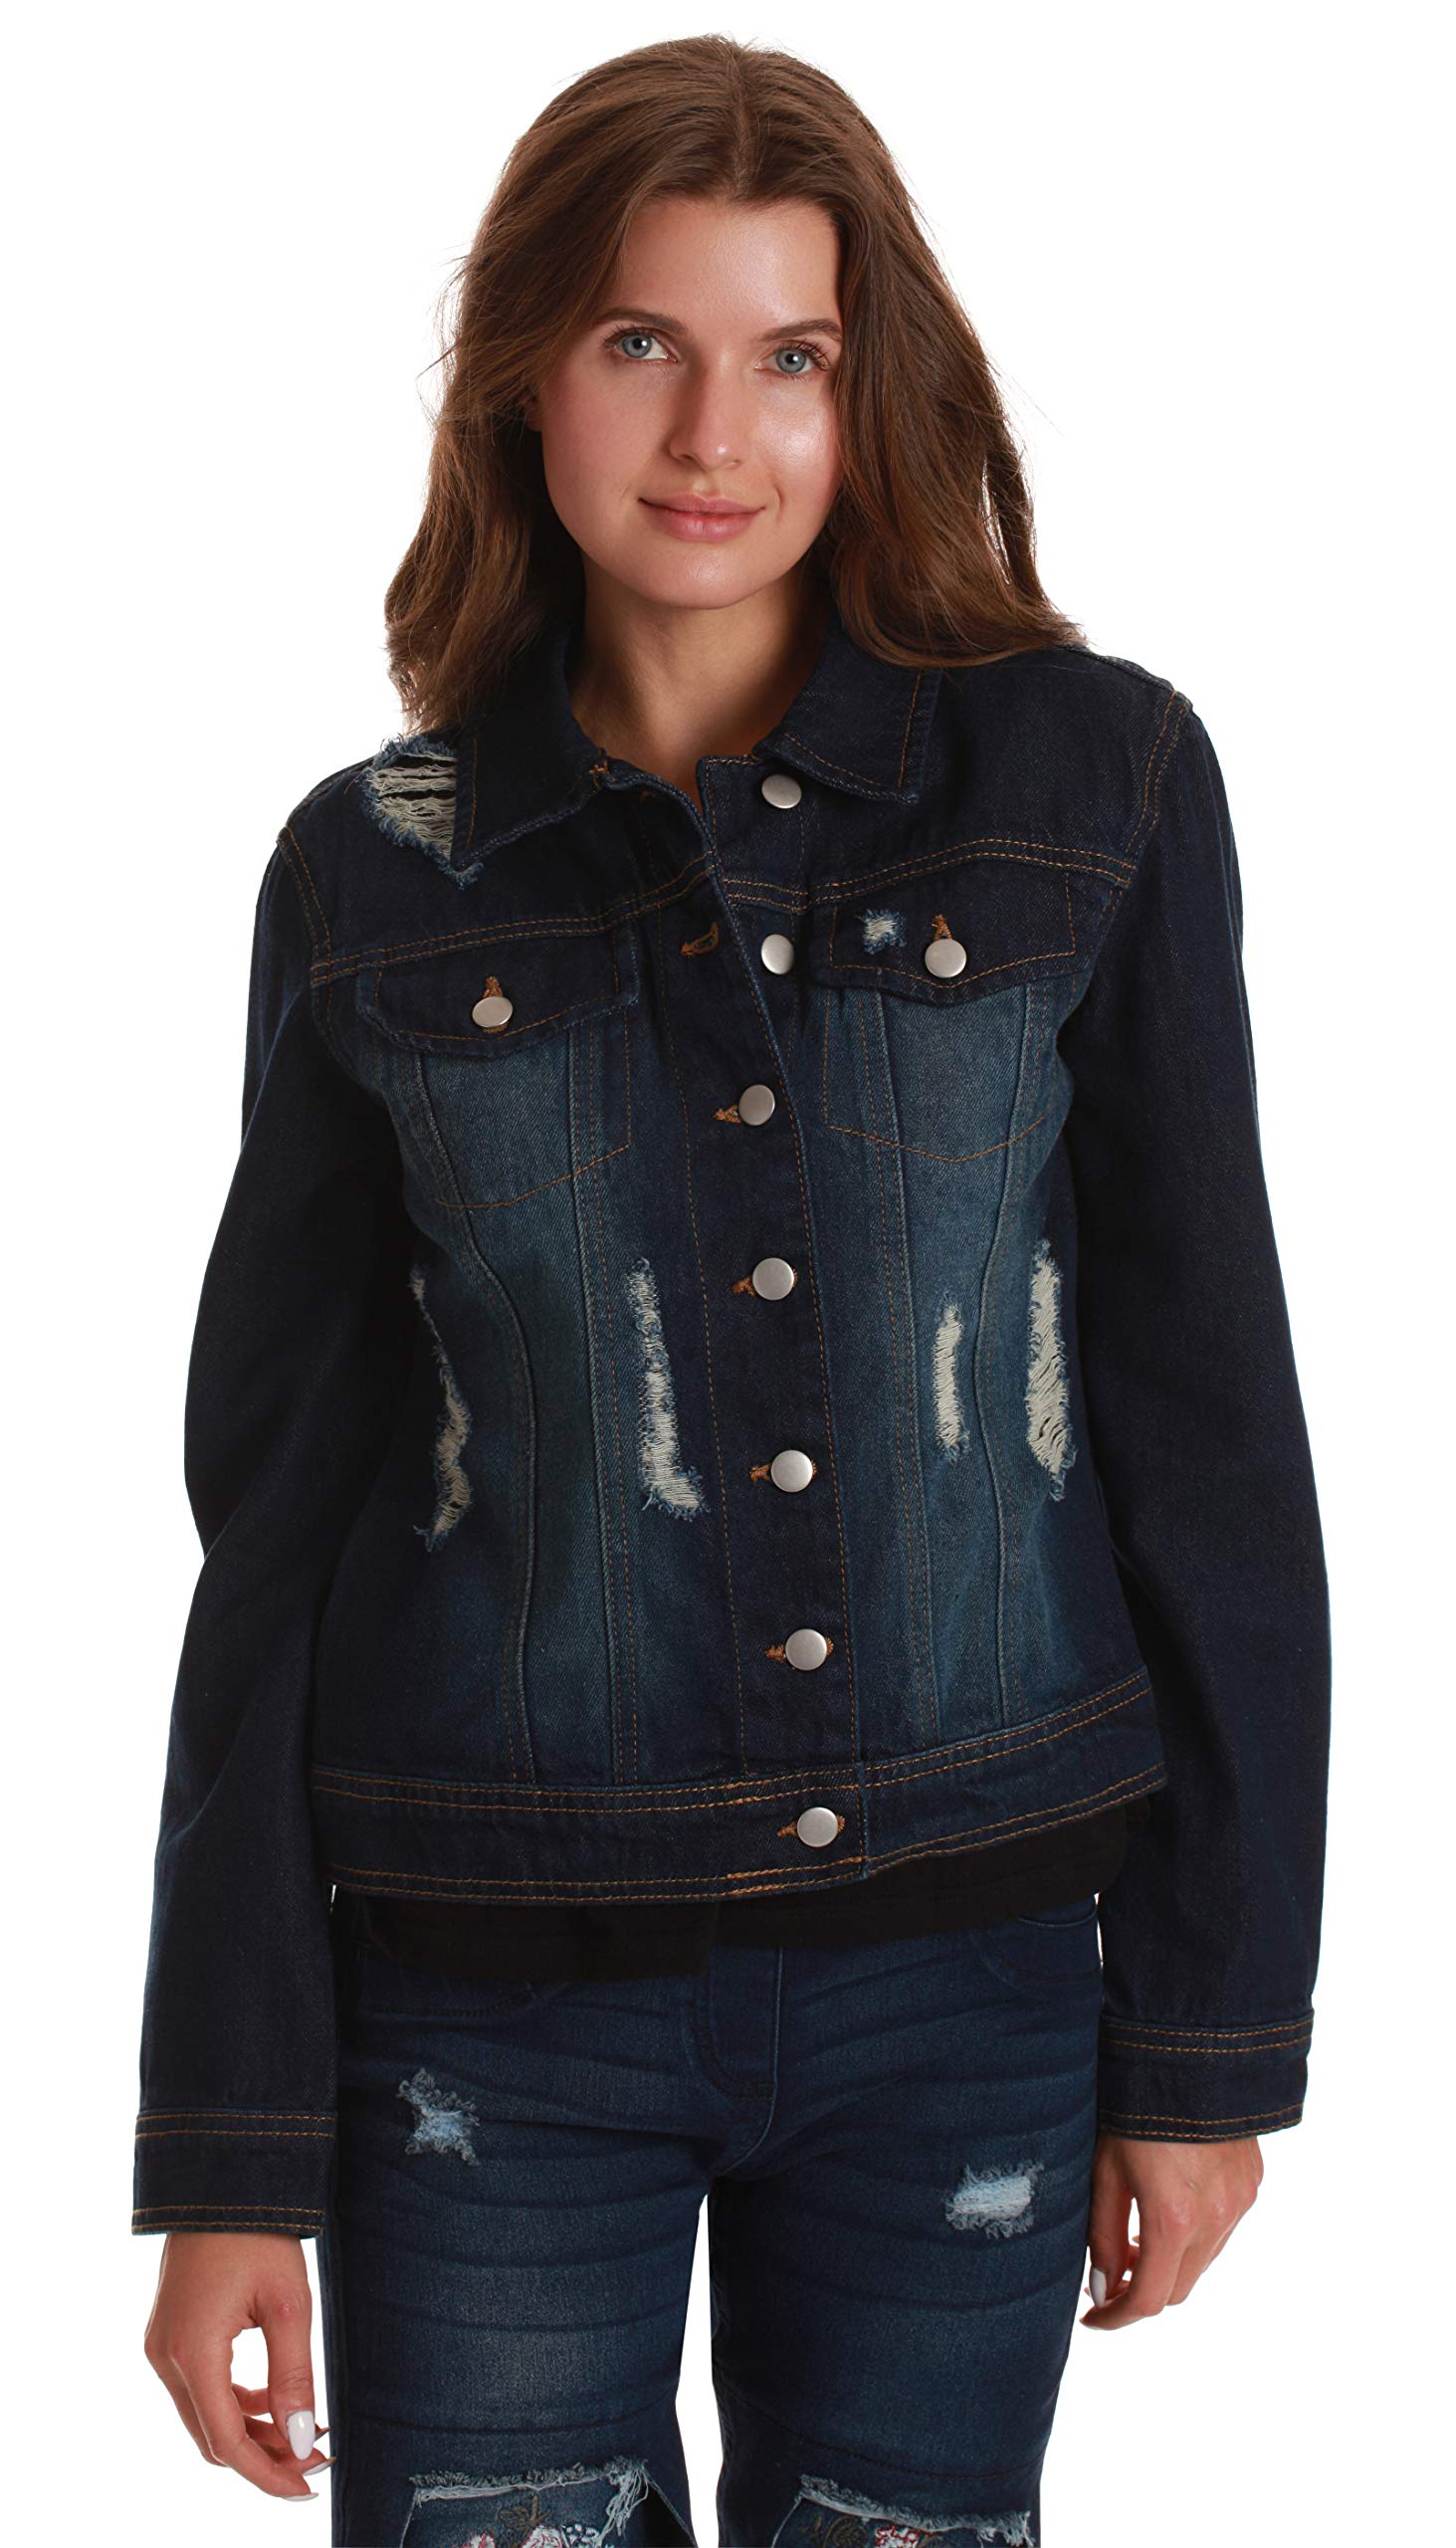 Just Love Denim Jackets for Women 6879-LTDEN-XXXL (Dark Denim, Large) - image 3 of 3